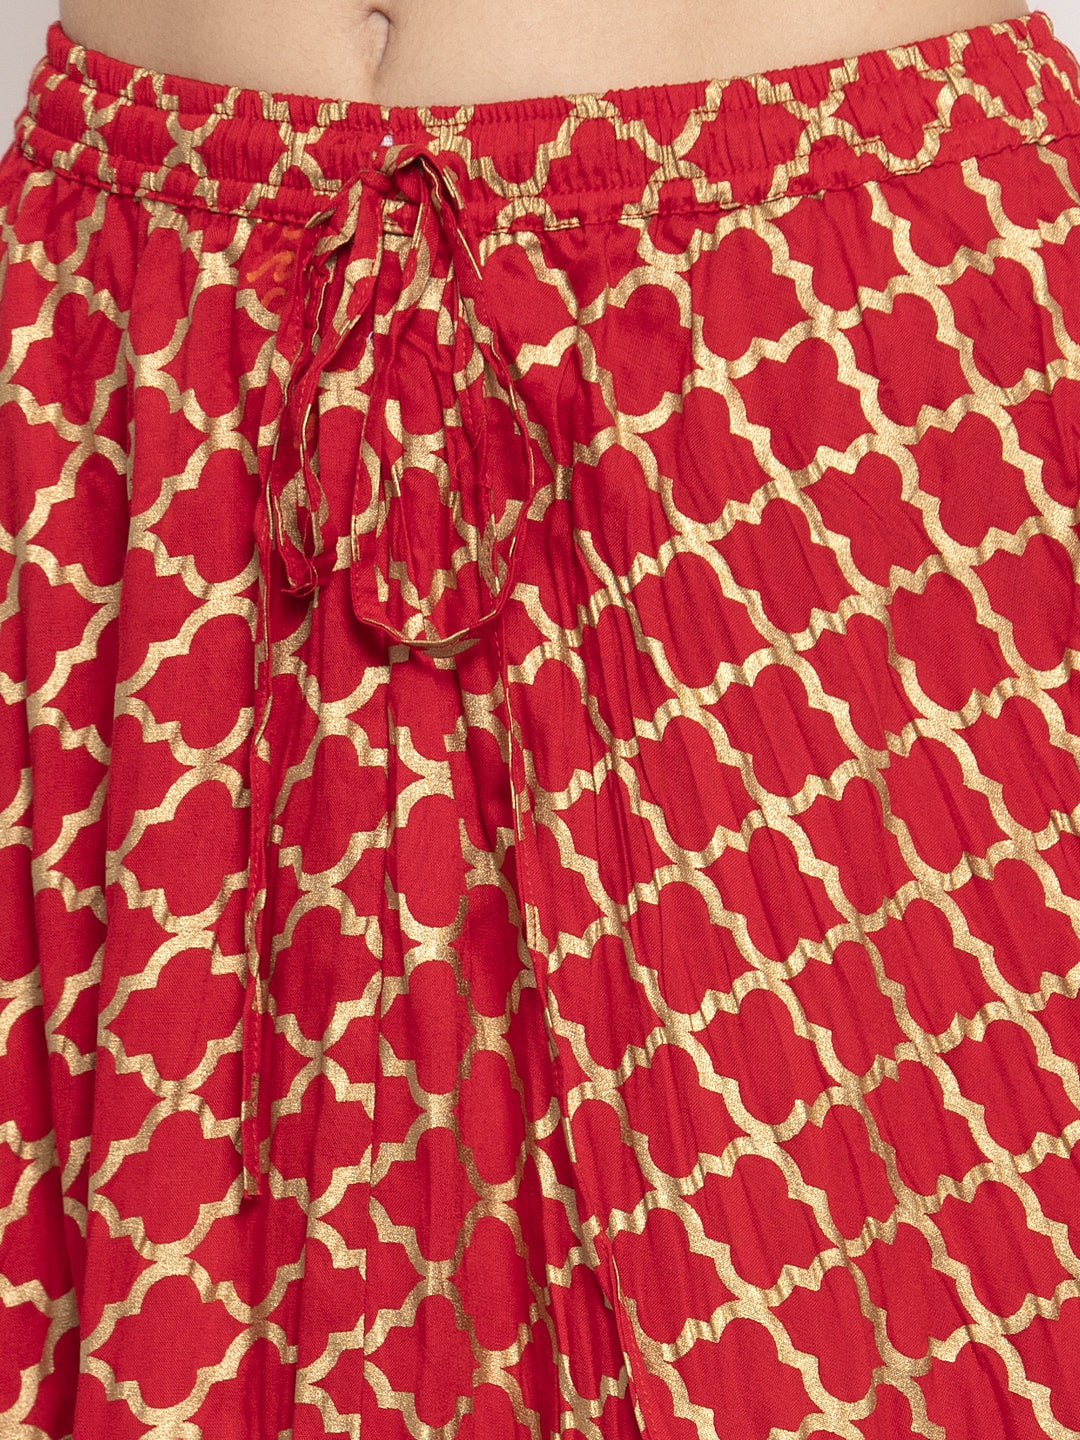 Women's Red Printed Rayon Skirt - Wahe-NOOR